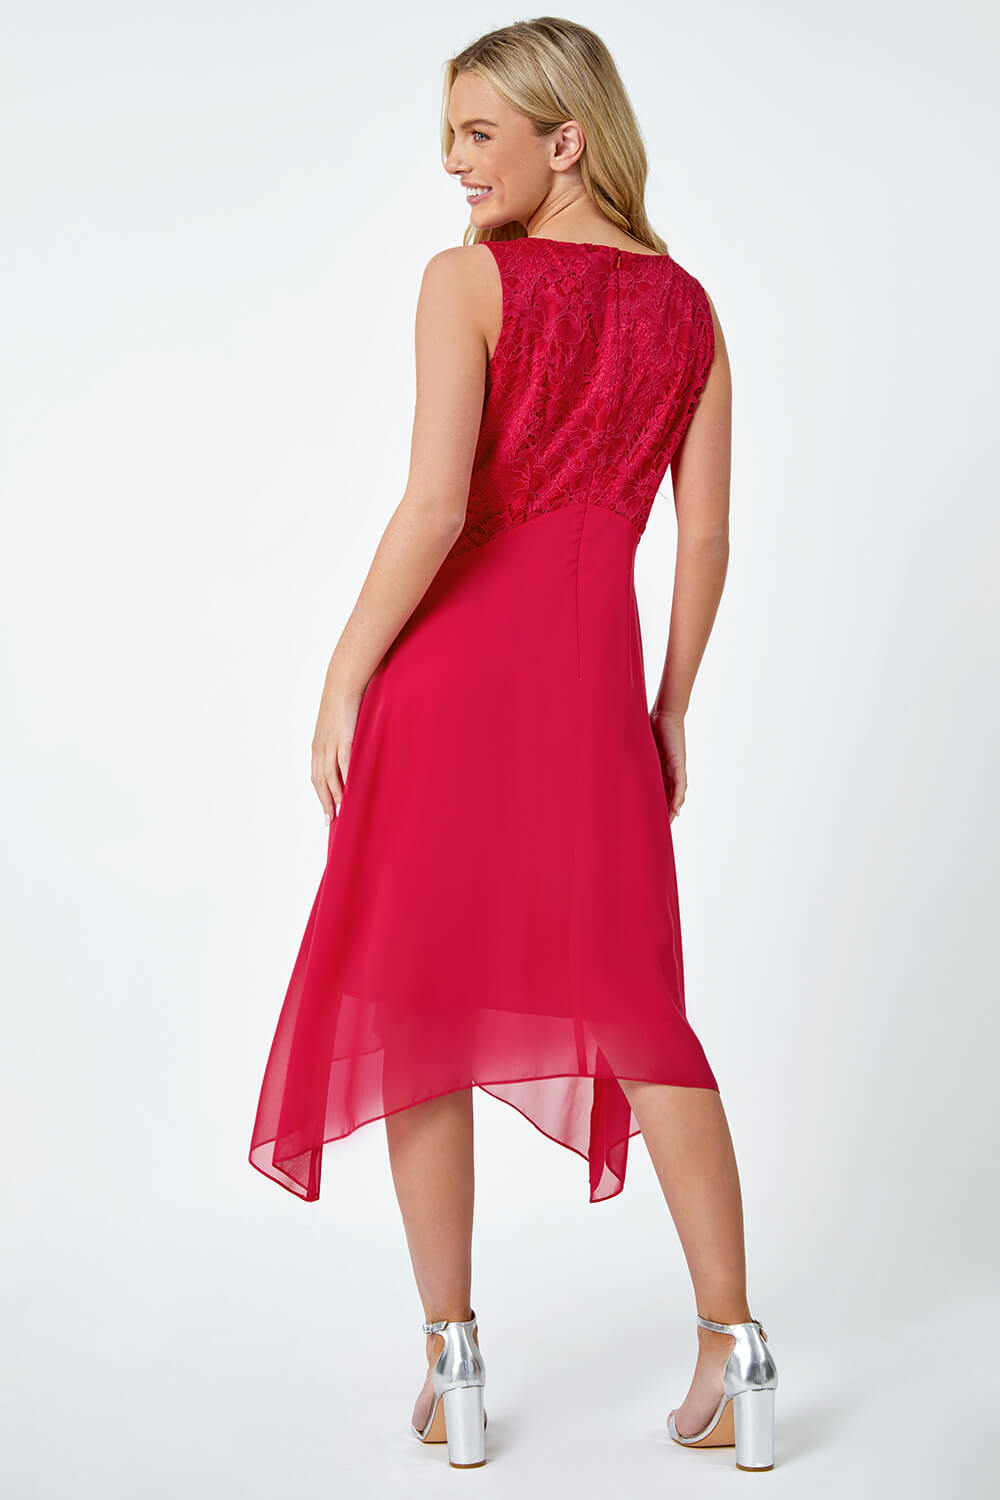 CERISE Petite Lace Bodice Chiffon Dress, Image 3 of 5